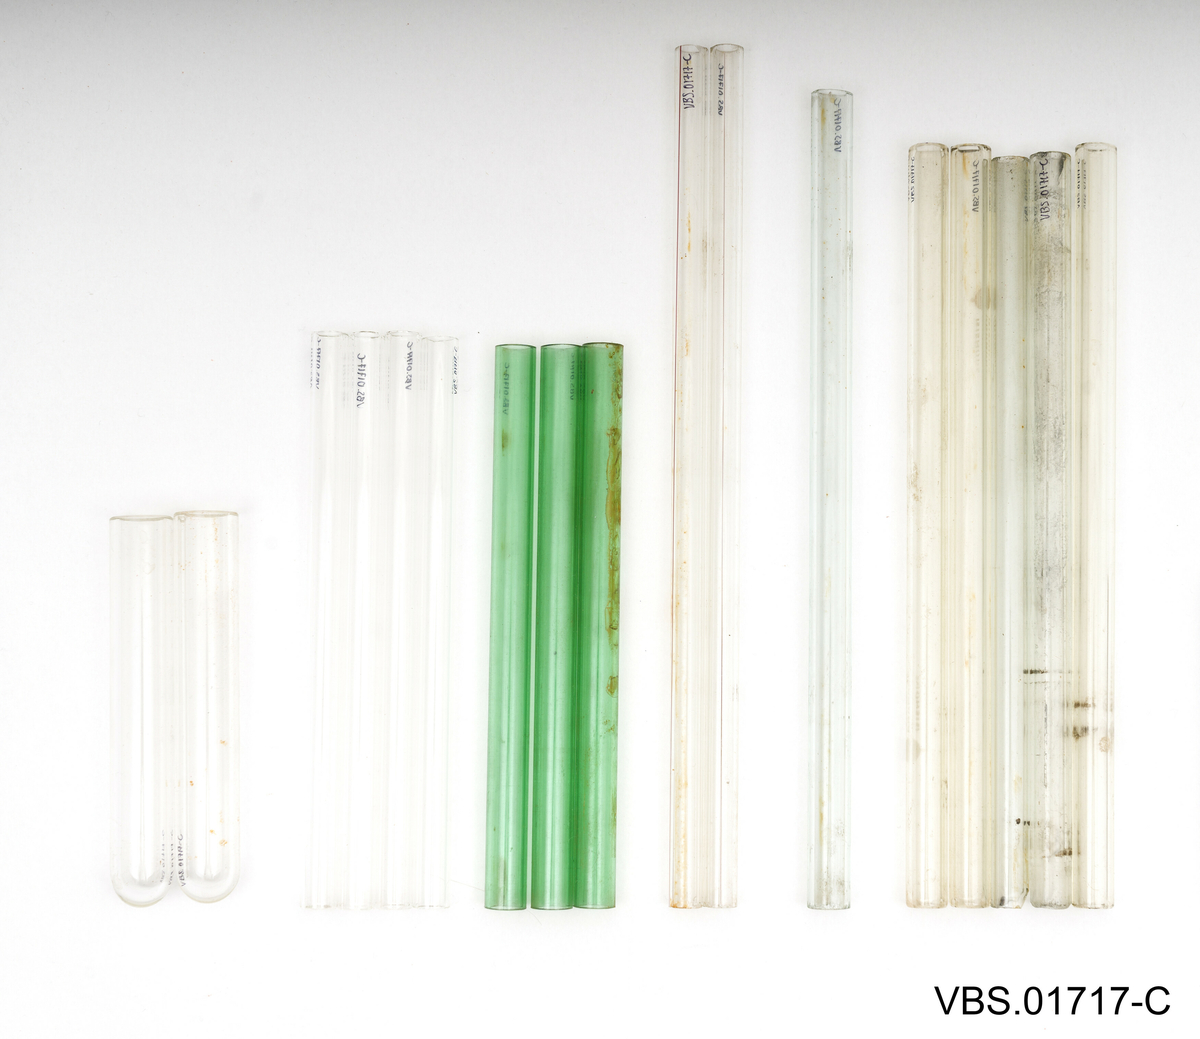 Aluminiums eske med, uten lokk, og to håndtak. Den inneholder et metallstativ med flere reagensrørholder eller glassrør.
Aluminiums eske (A), stål stativ (B) og glassrør (C) på bilder.

Glassrør settet består av: 
2 hvite glass prøverør (13x2cm diameter). Brukte.
3 grønne glassrør (20x1,5 cm diameter). Brukte.
5 hvite glassrør (28x1,5 cm diameter). Brukte.
3 hvite glassrør (50x1,5 cm diameter). Brukte.
4 nye hvite glassrør (28x1,5 cm diameter). Brukte.